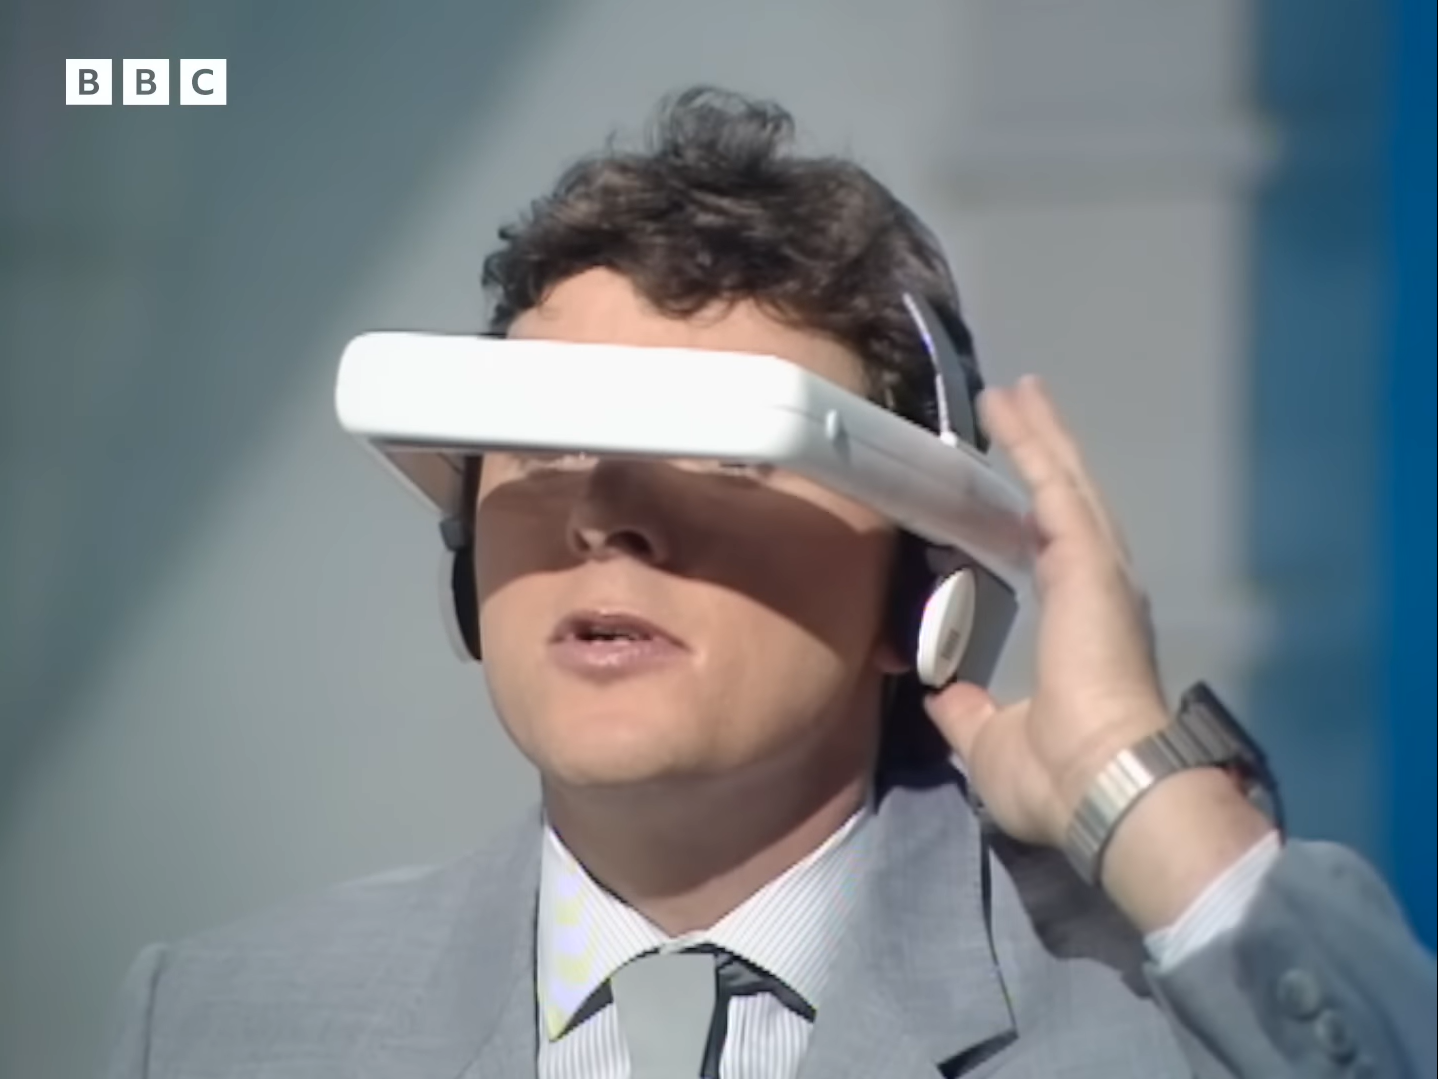 Peruki, smartwatche i VR: jak wyobrażano sobie człowieka przyszłości w 1987 r. Wideo